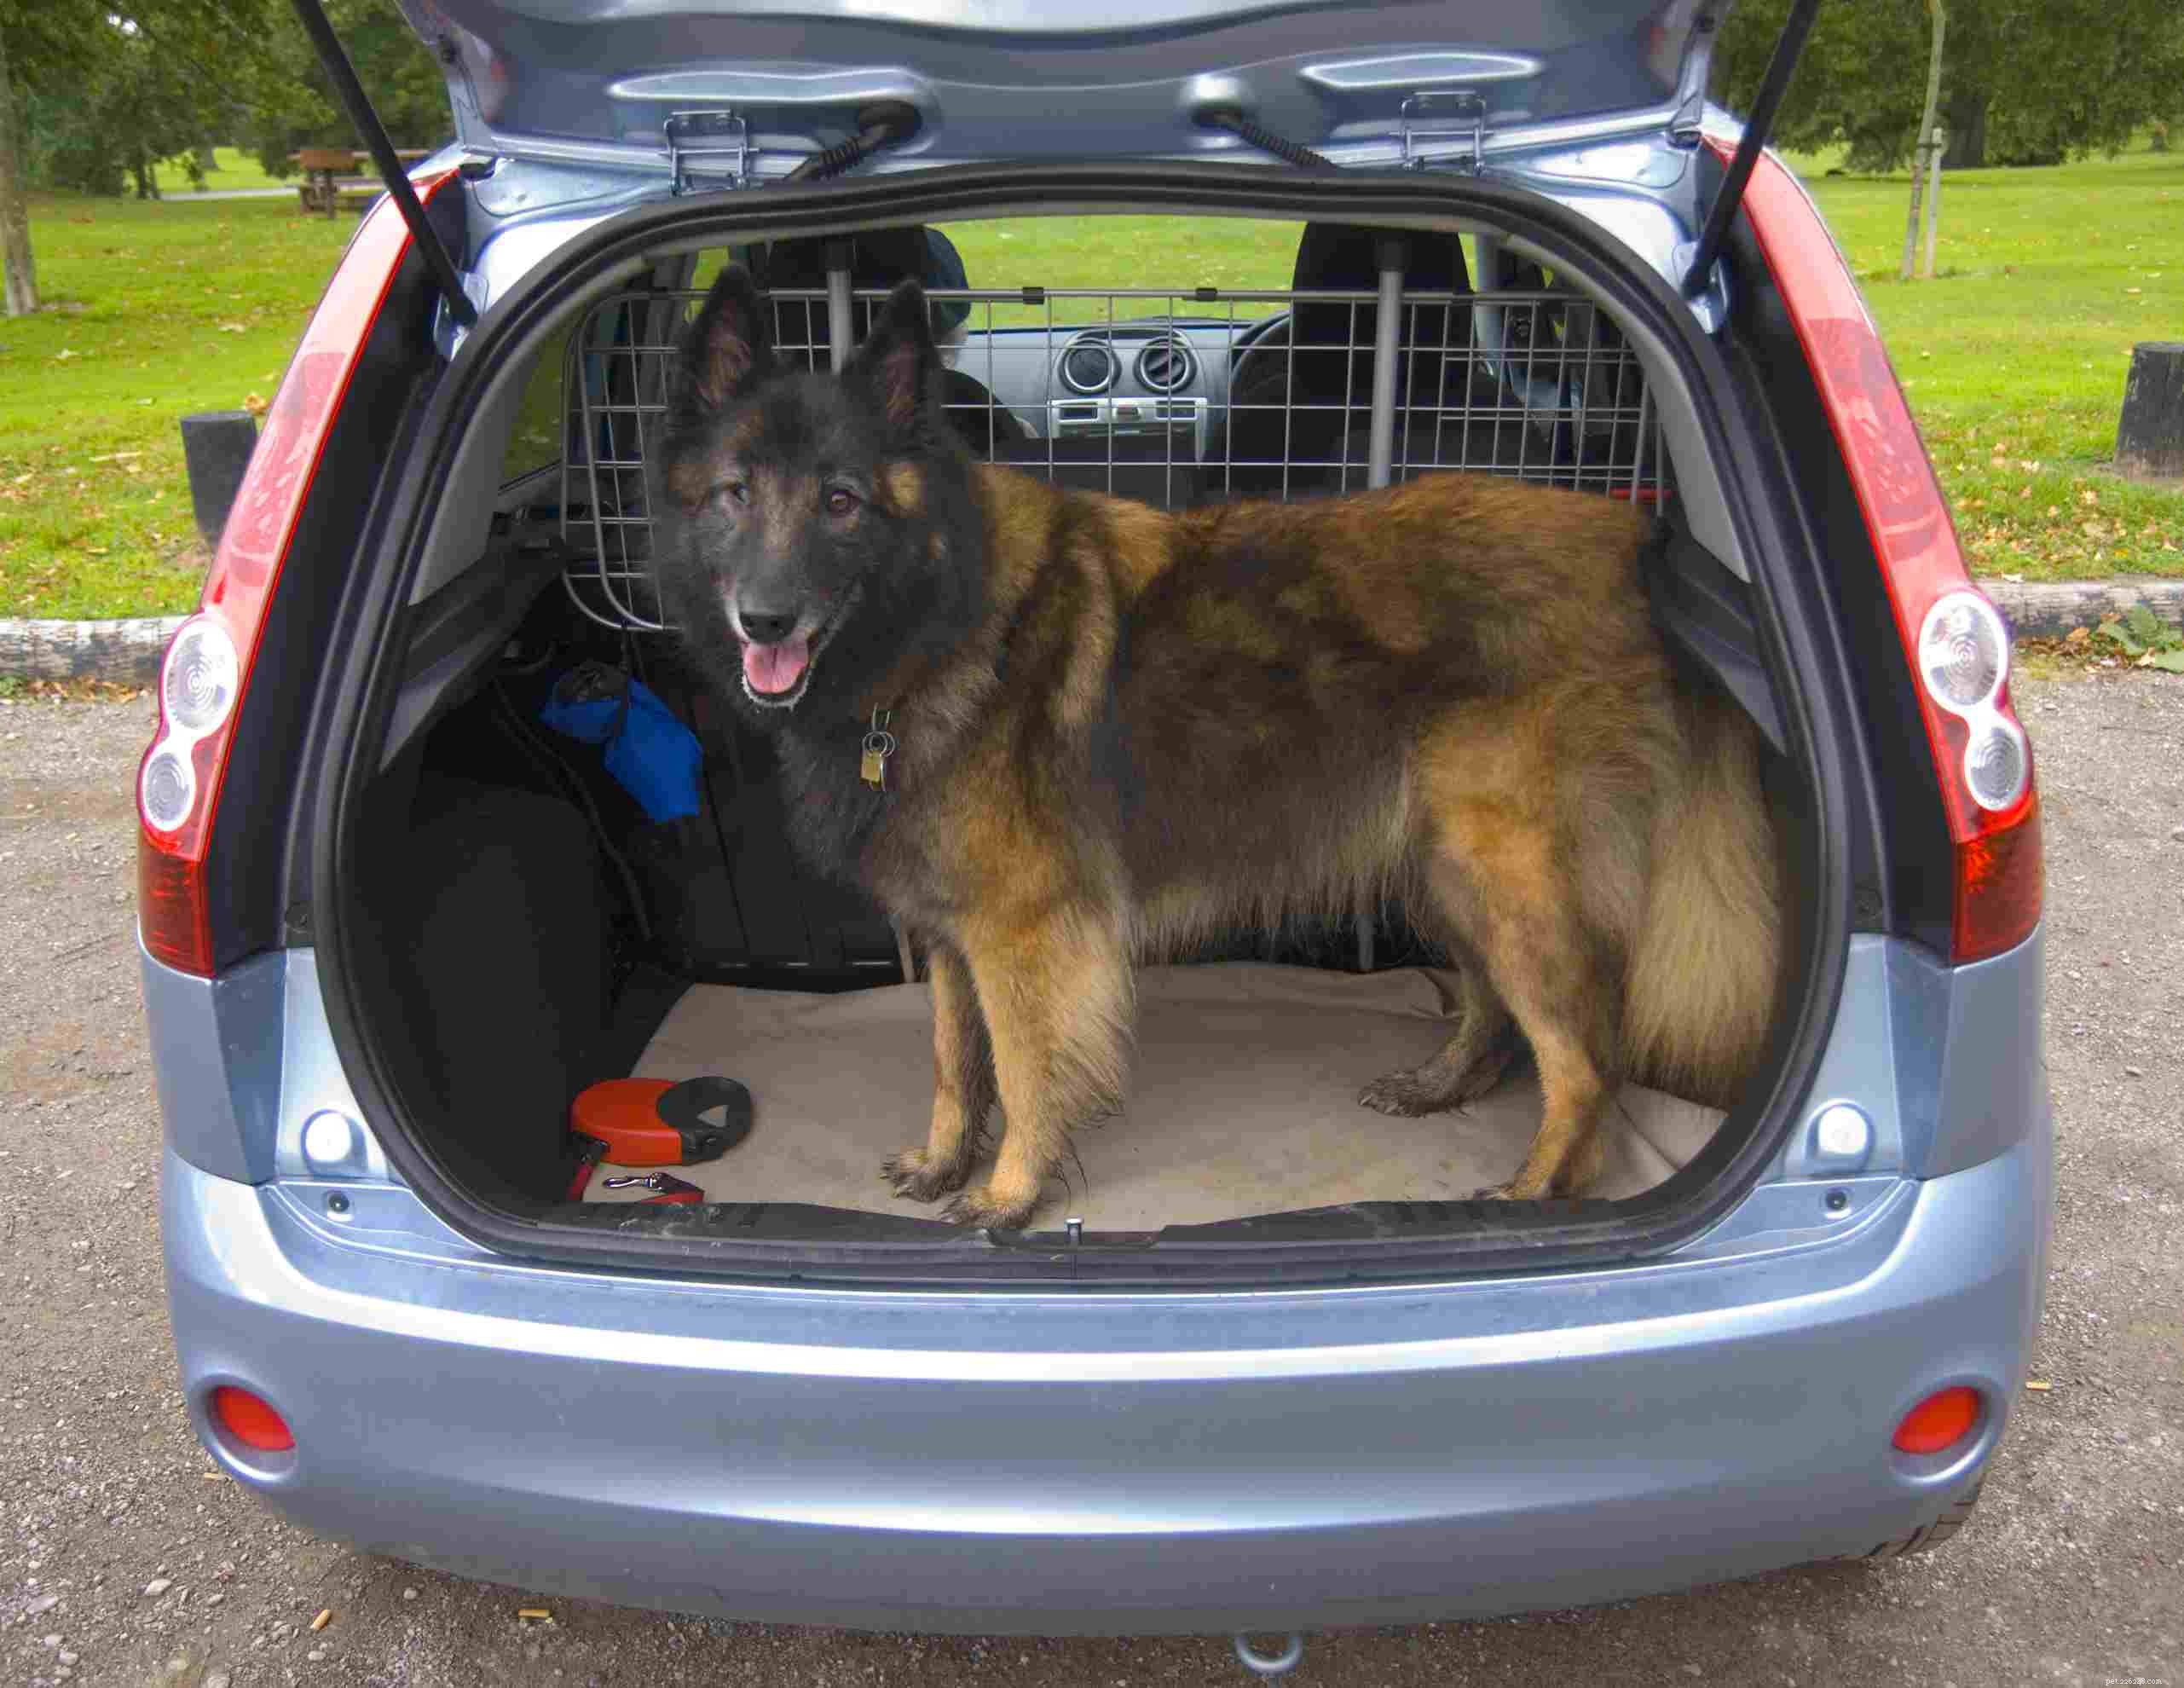 Bästa sättet att hålla fast en hund i bilen för säkerhet